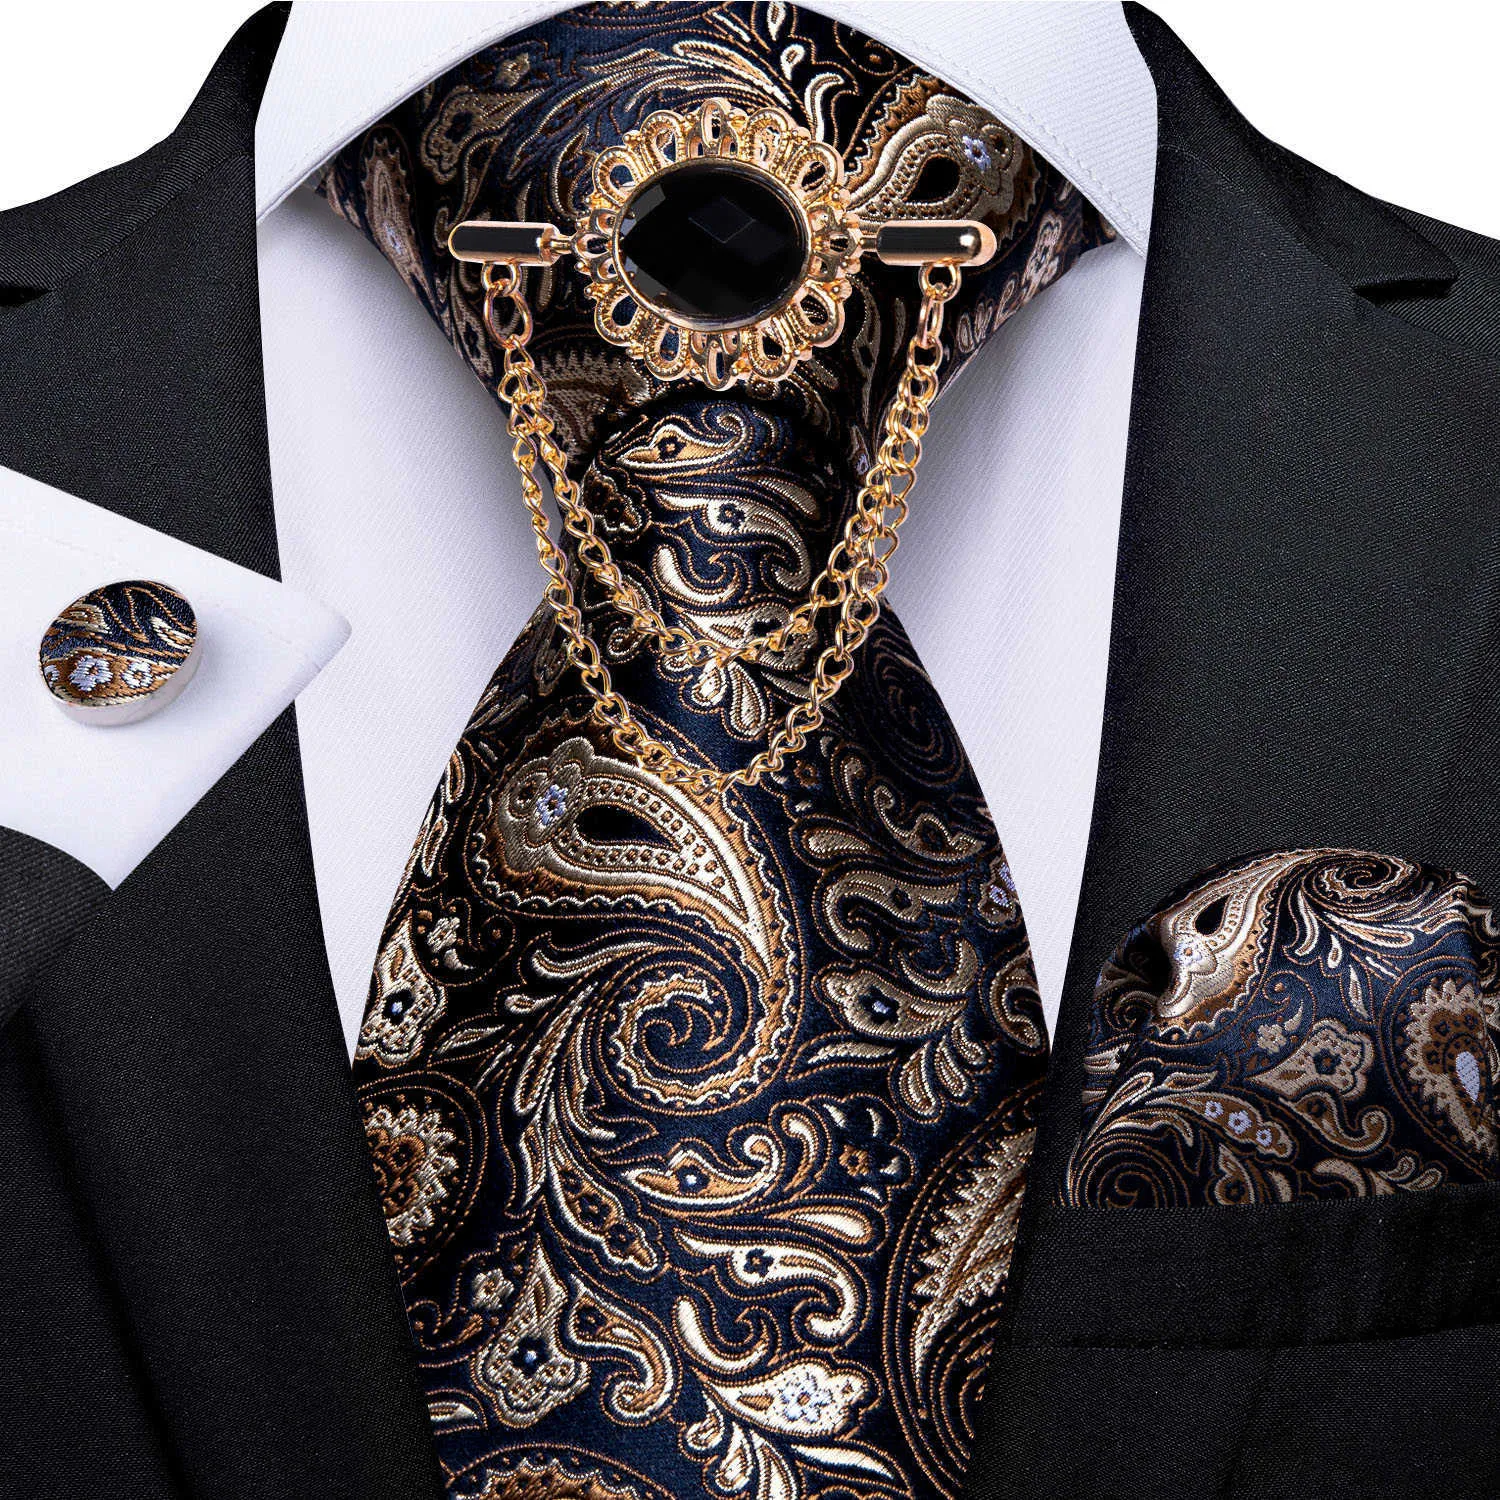 Krawat za szyję 2022 Nowy projekt moda męska broszka broszka luksusowy Paisley jedwabny krawat chusteczki mankiety ustawione na przyjęcie weselne krawat dibanguan